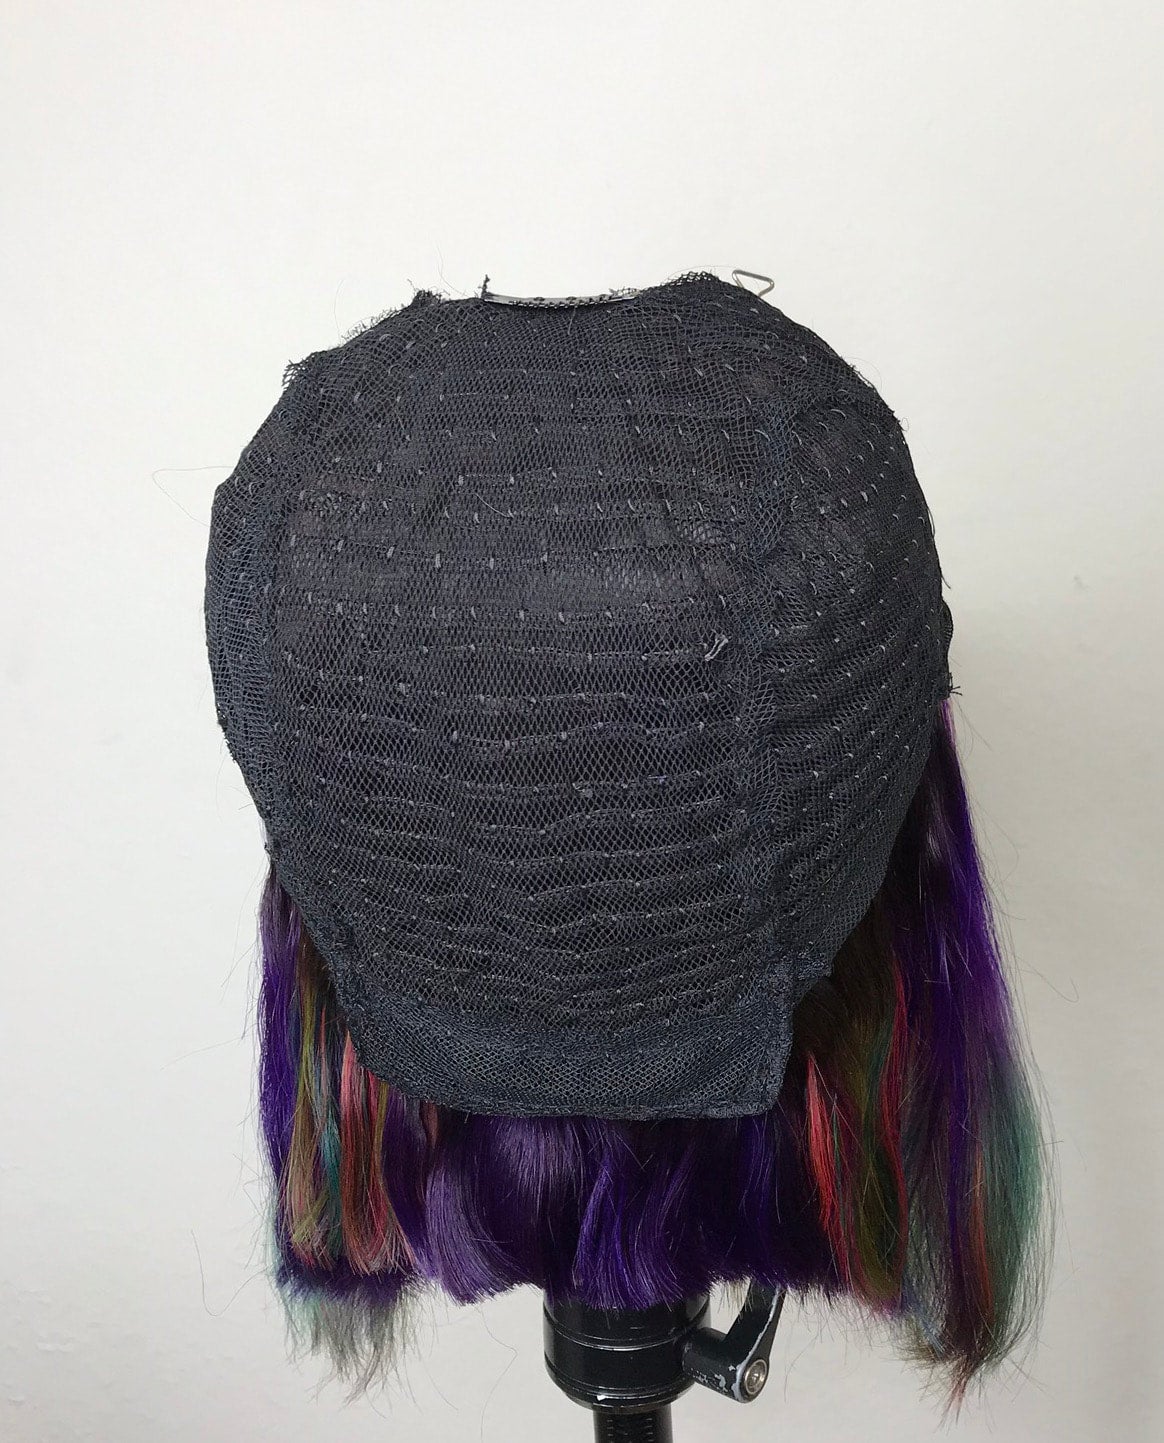 Magic U-Part Wig Cap [Center Parting]